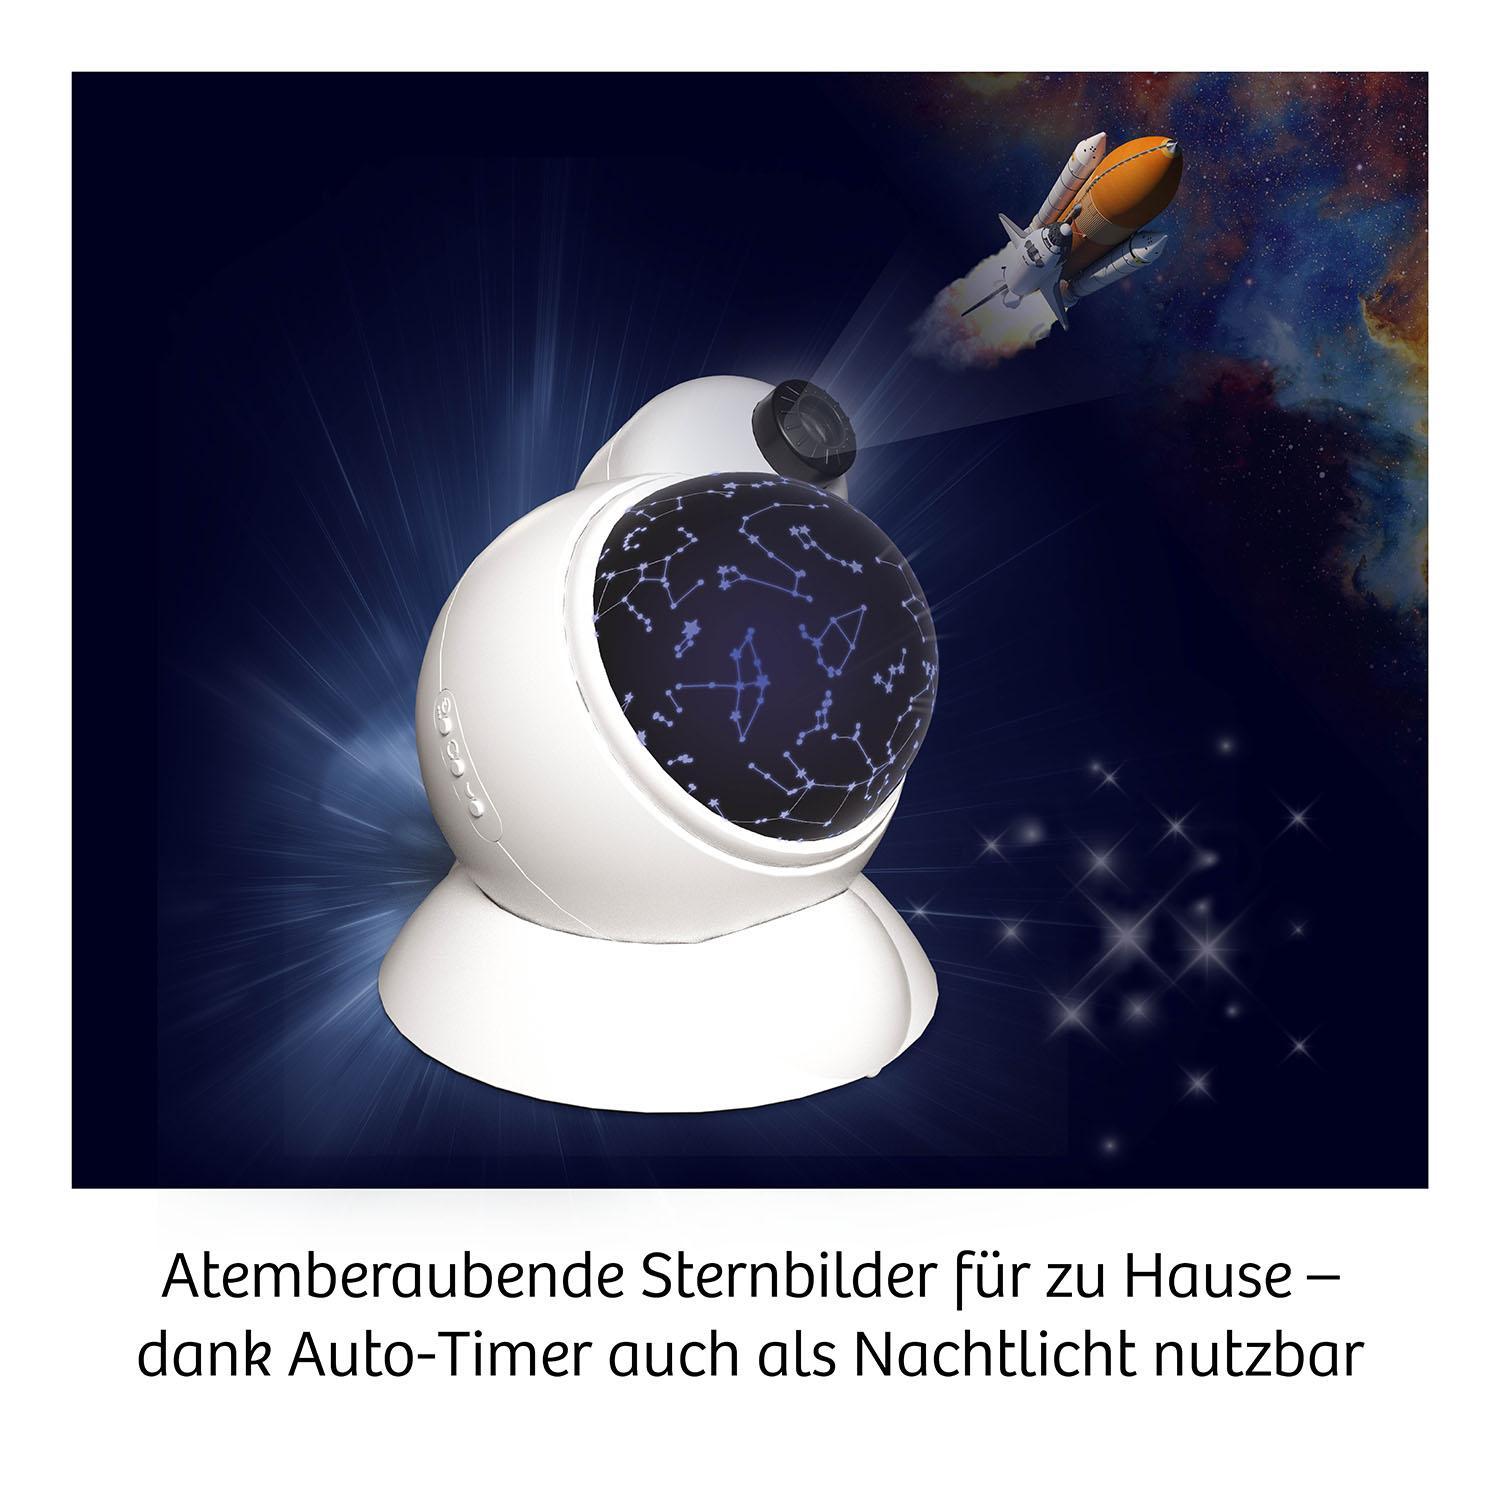 ZImmer-Planetarium 3